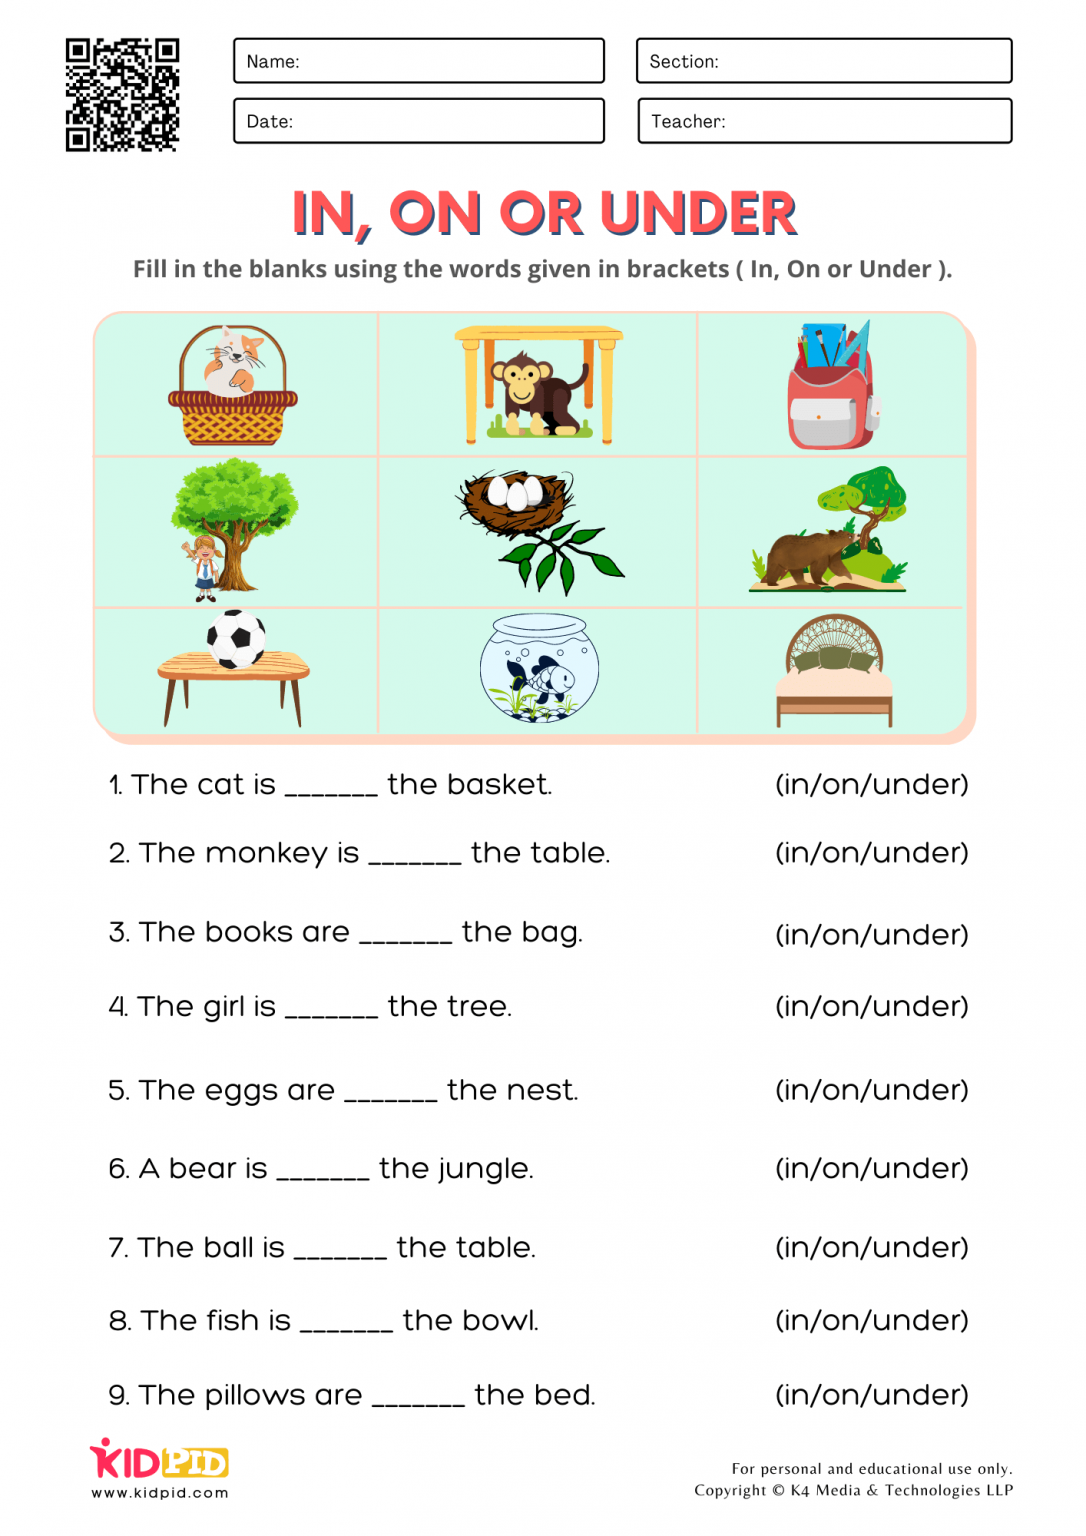 preposition-in-on-under-worksheet